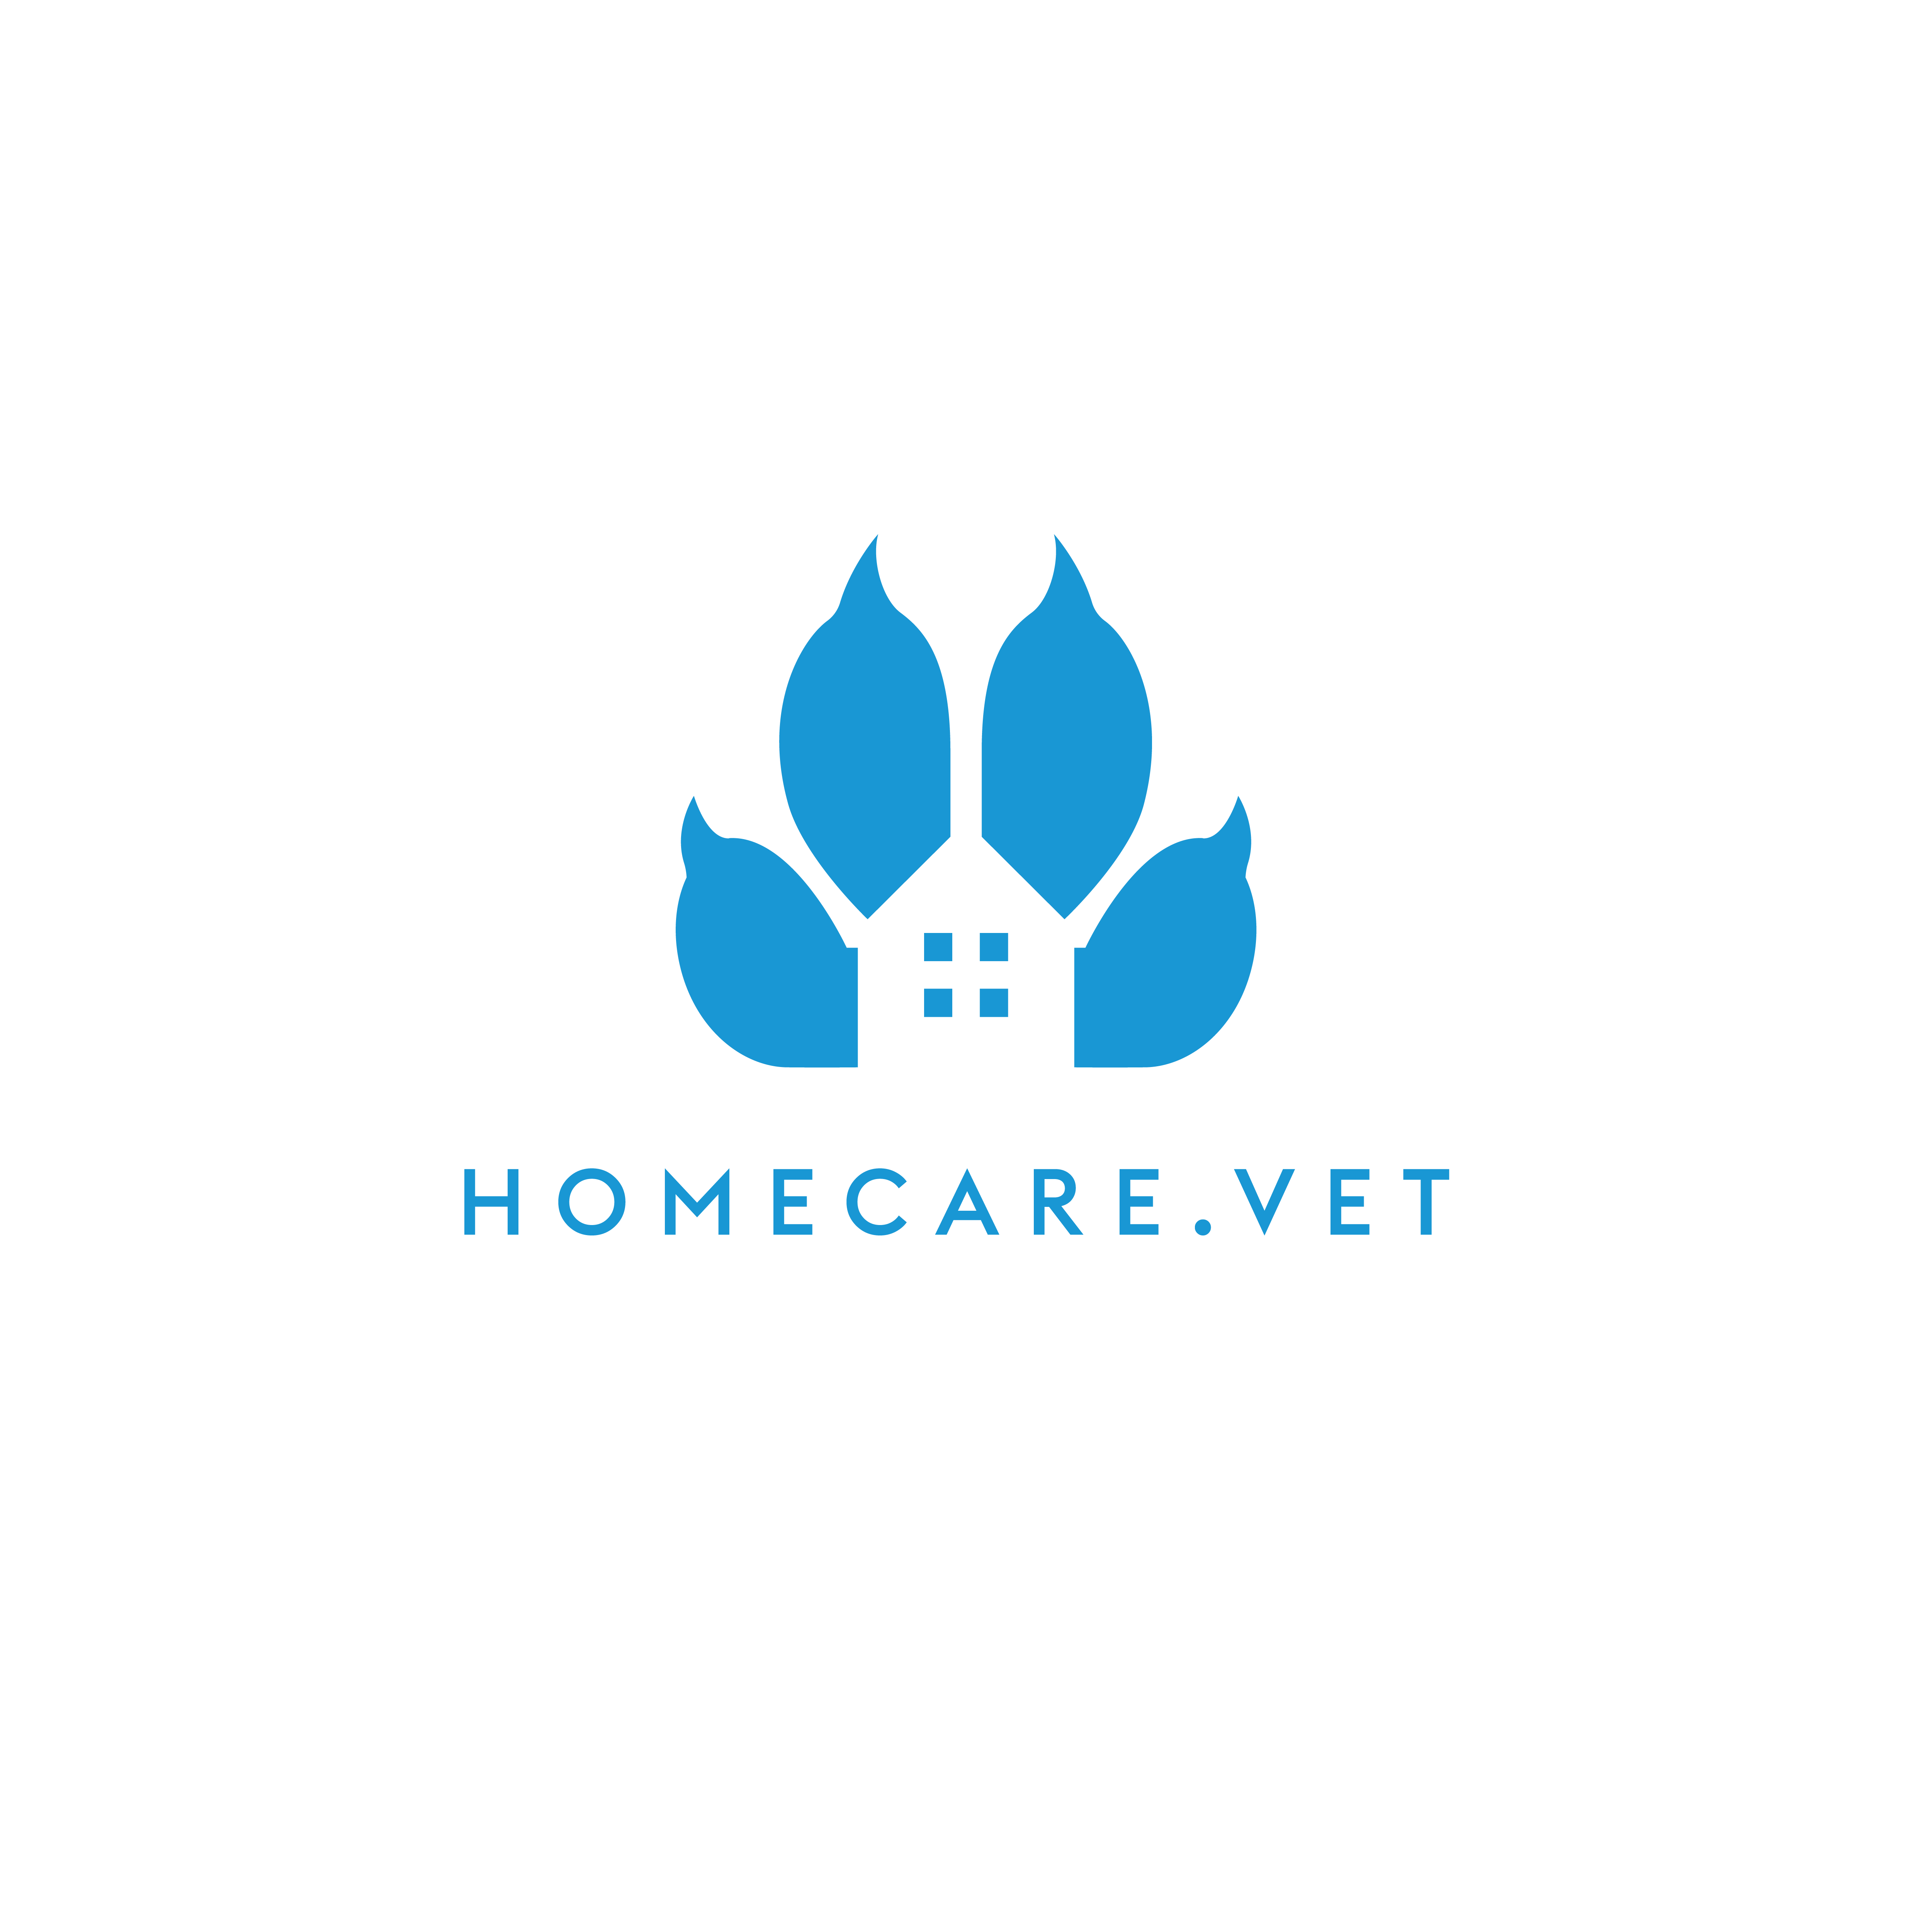 https://www.homecare.vet/